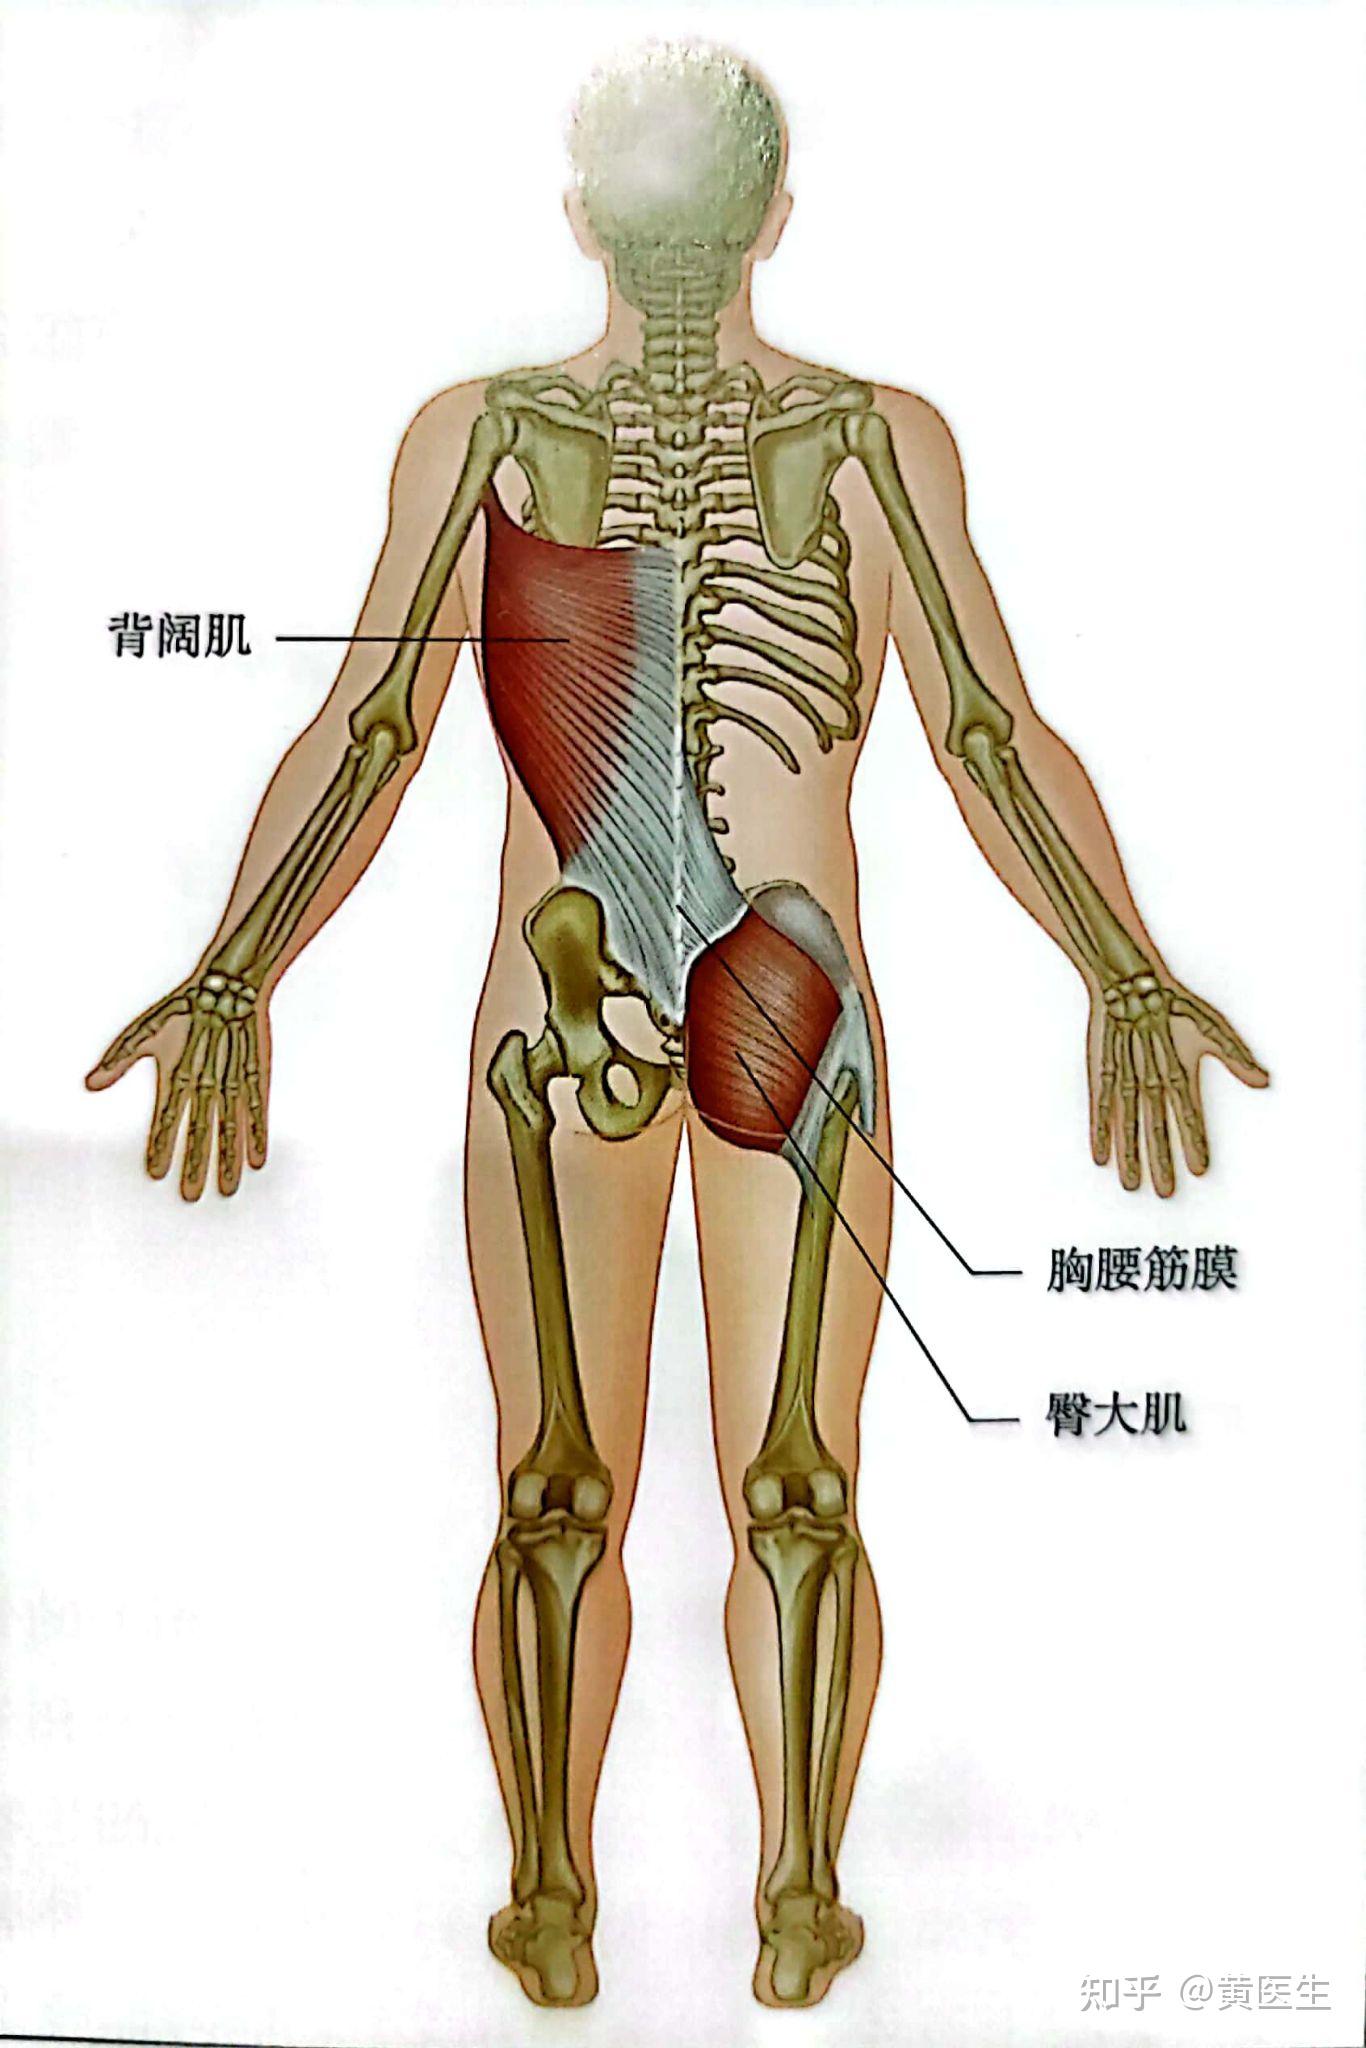 臀部肌肉分布图解剖图片